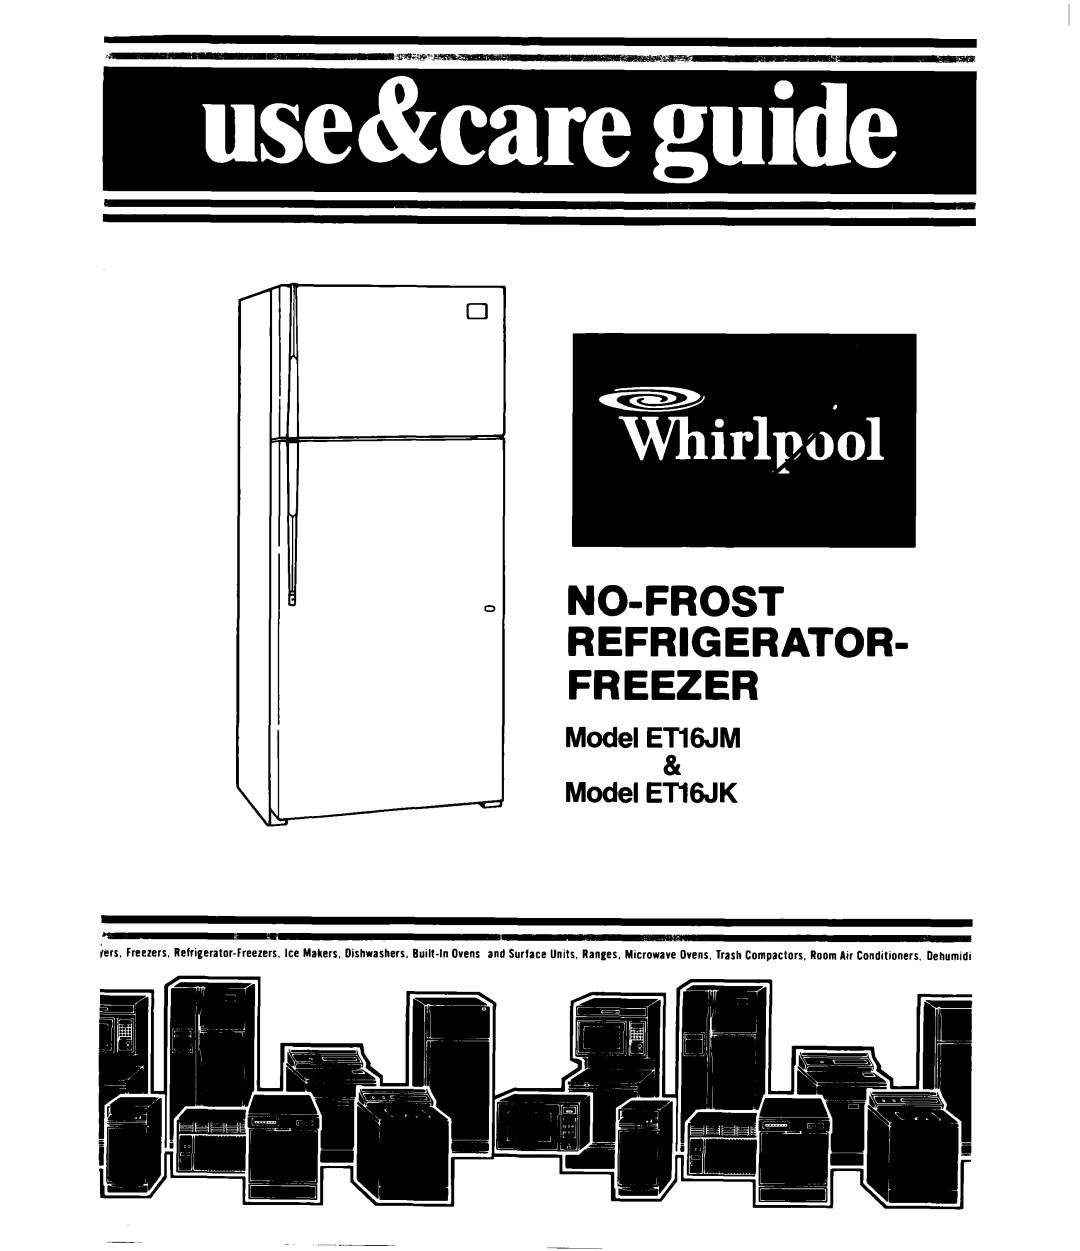 Whirlpool ET16JM manual No-Frost Refrigerator Freezer, Model ETWM & Model ETl6JK 